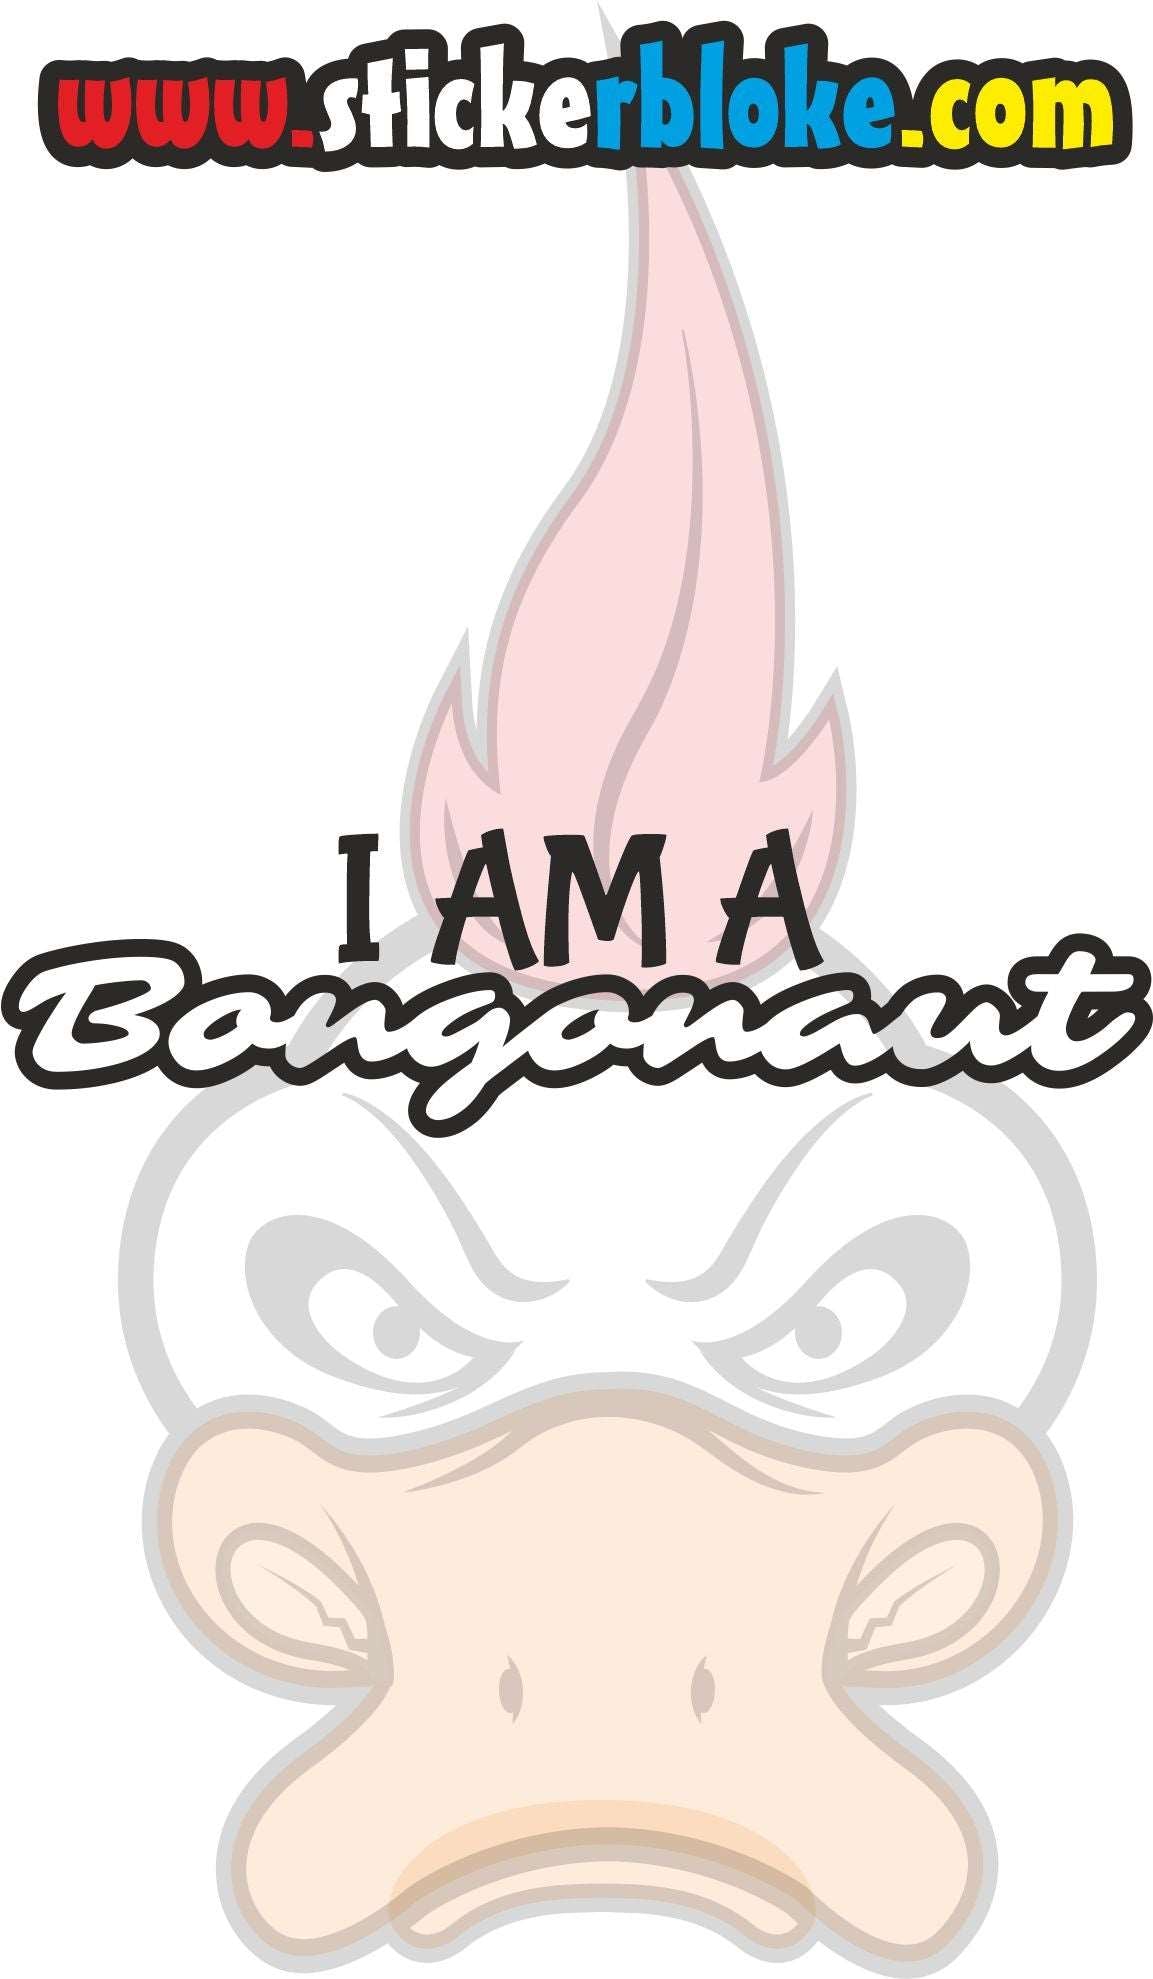 I AM A BONGONAUT